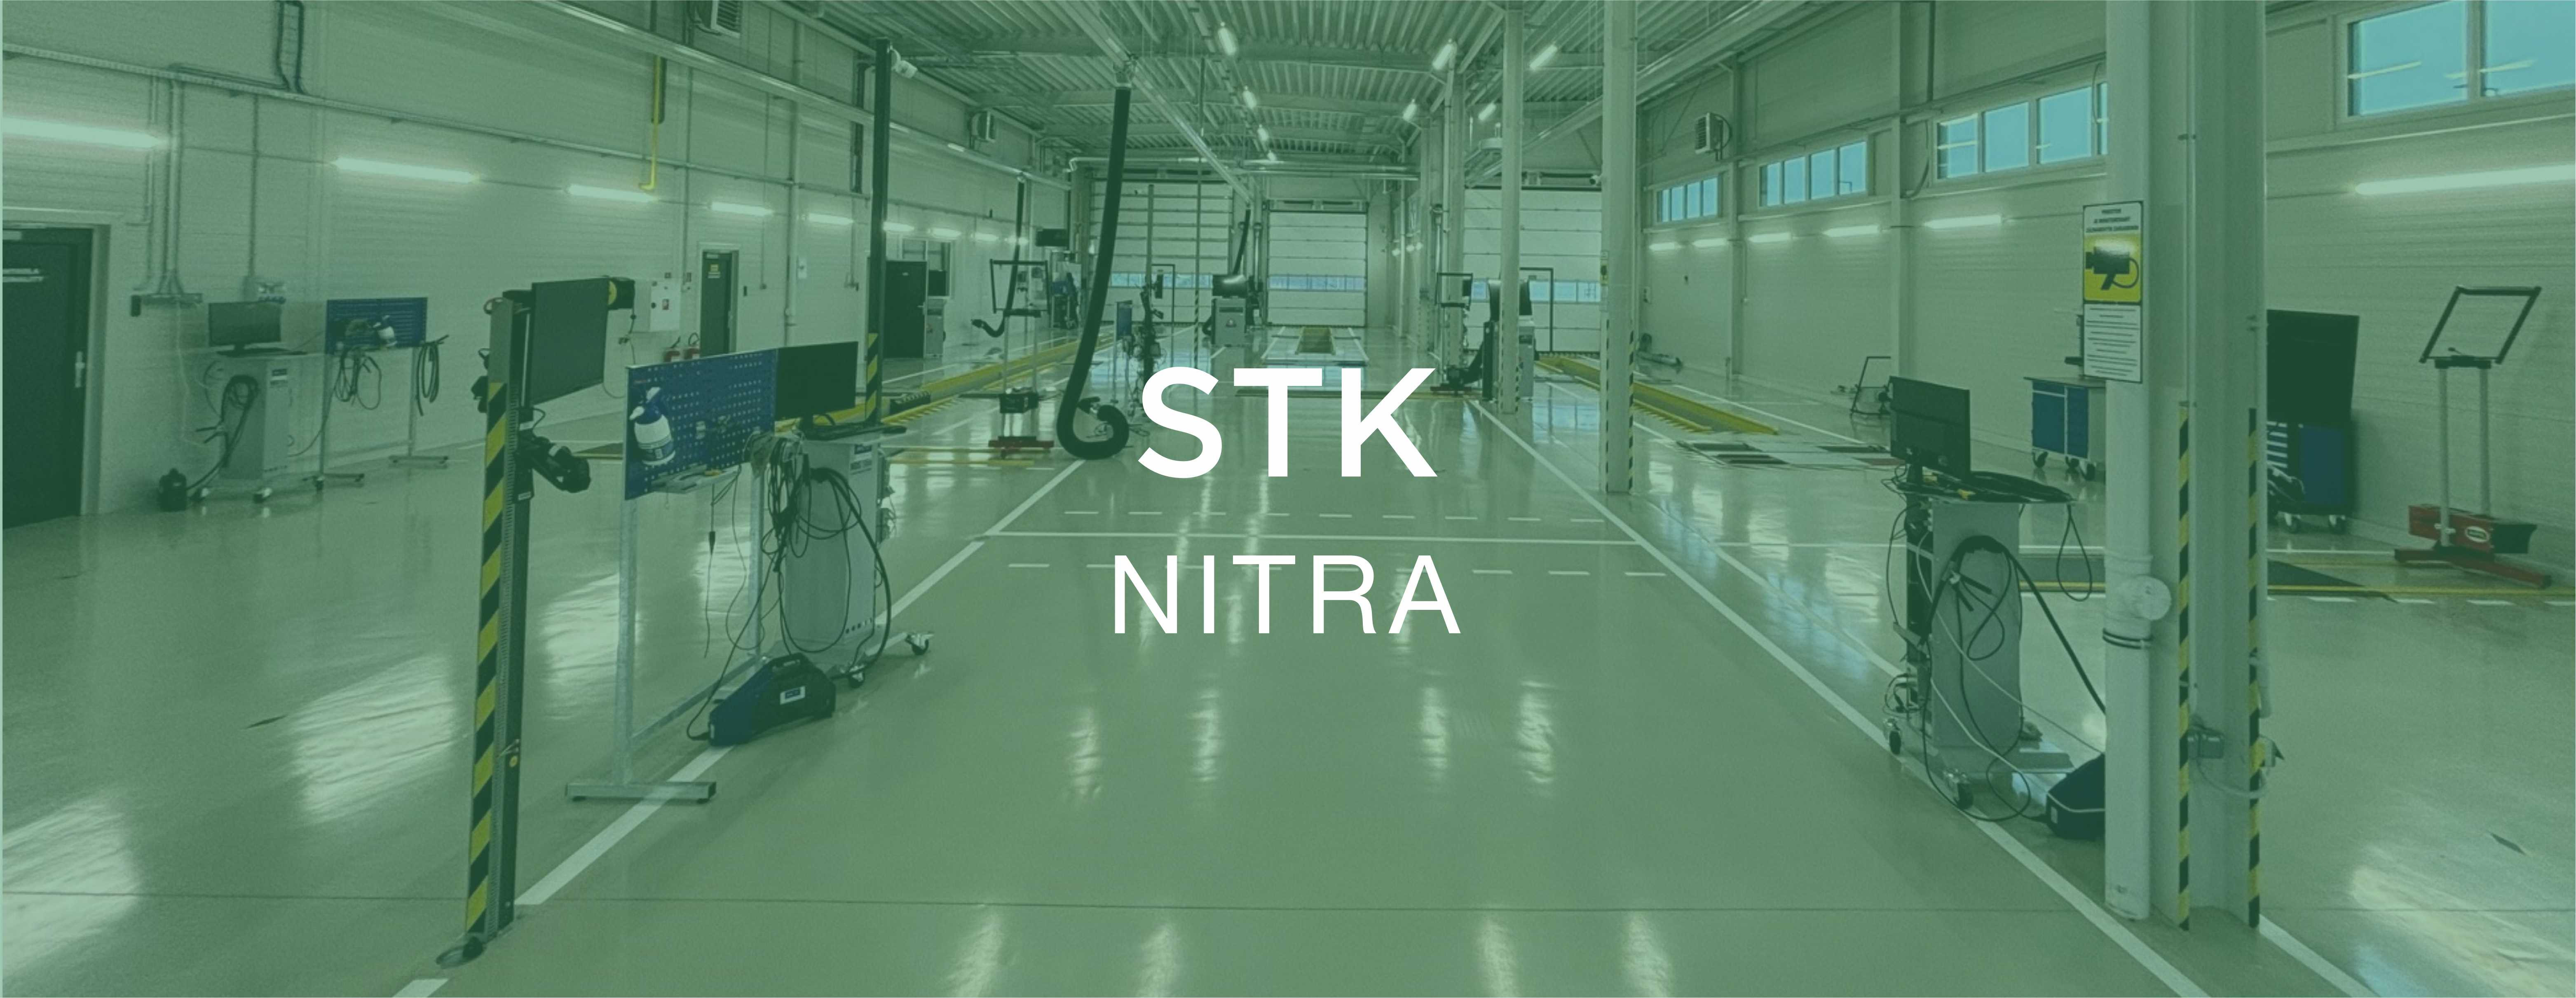 STK Nitra